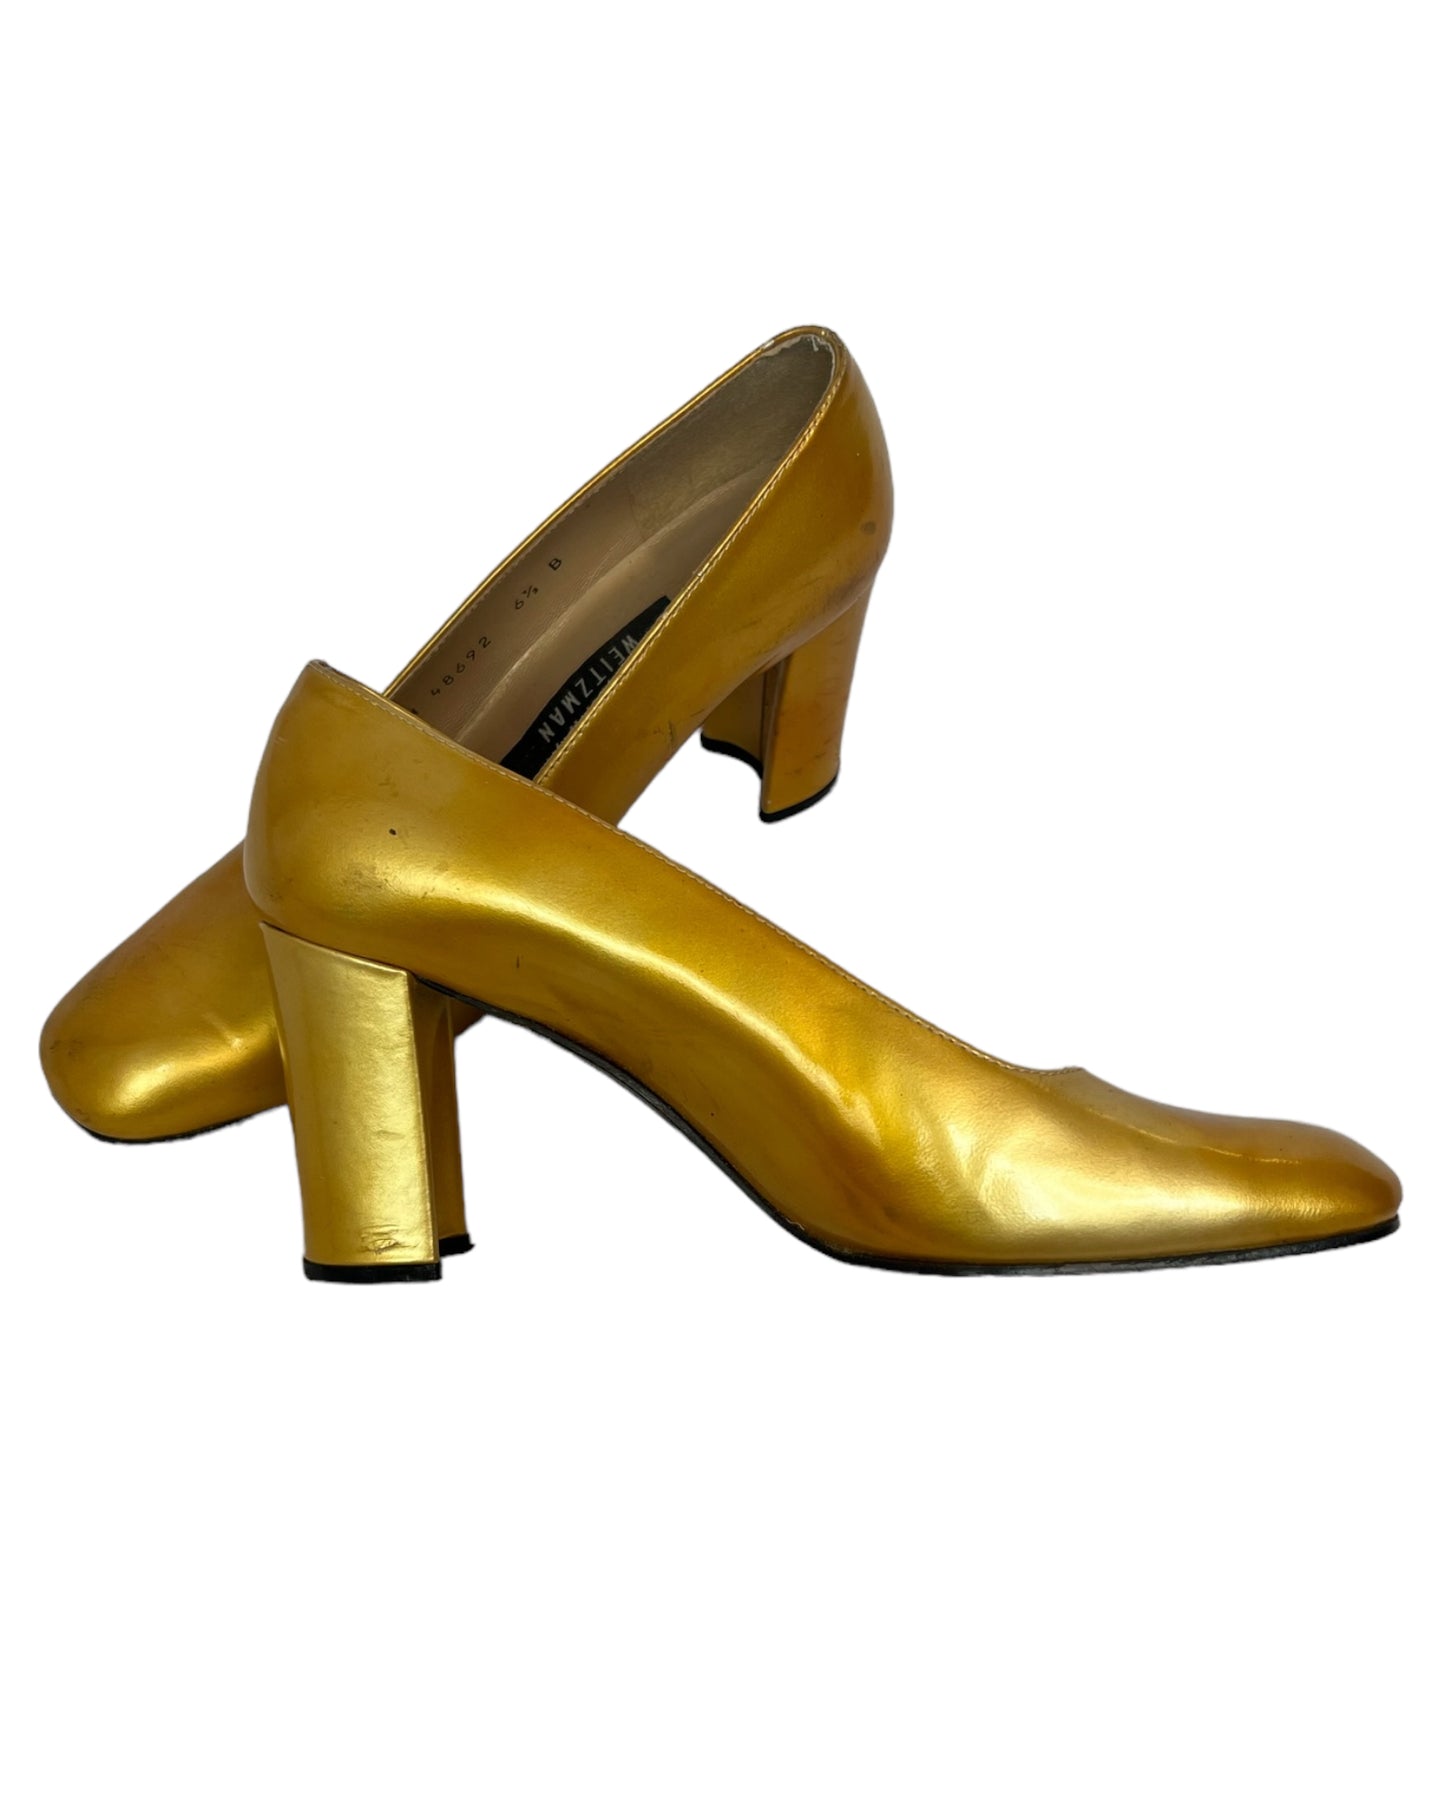 Vintage Golden Step Heels*